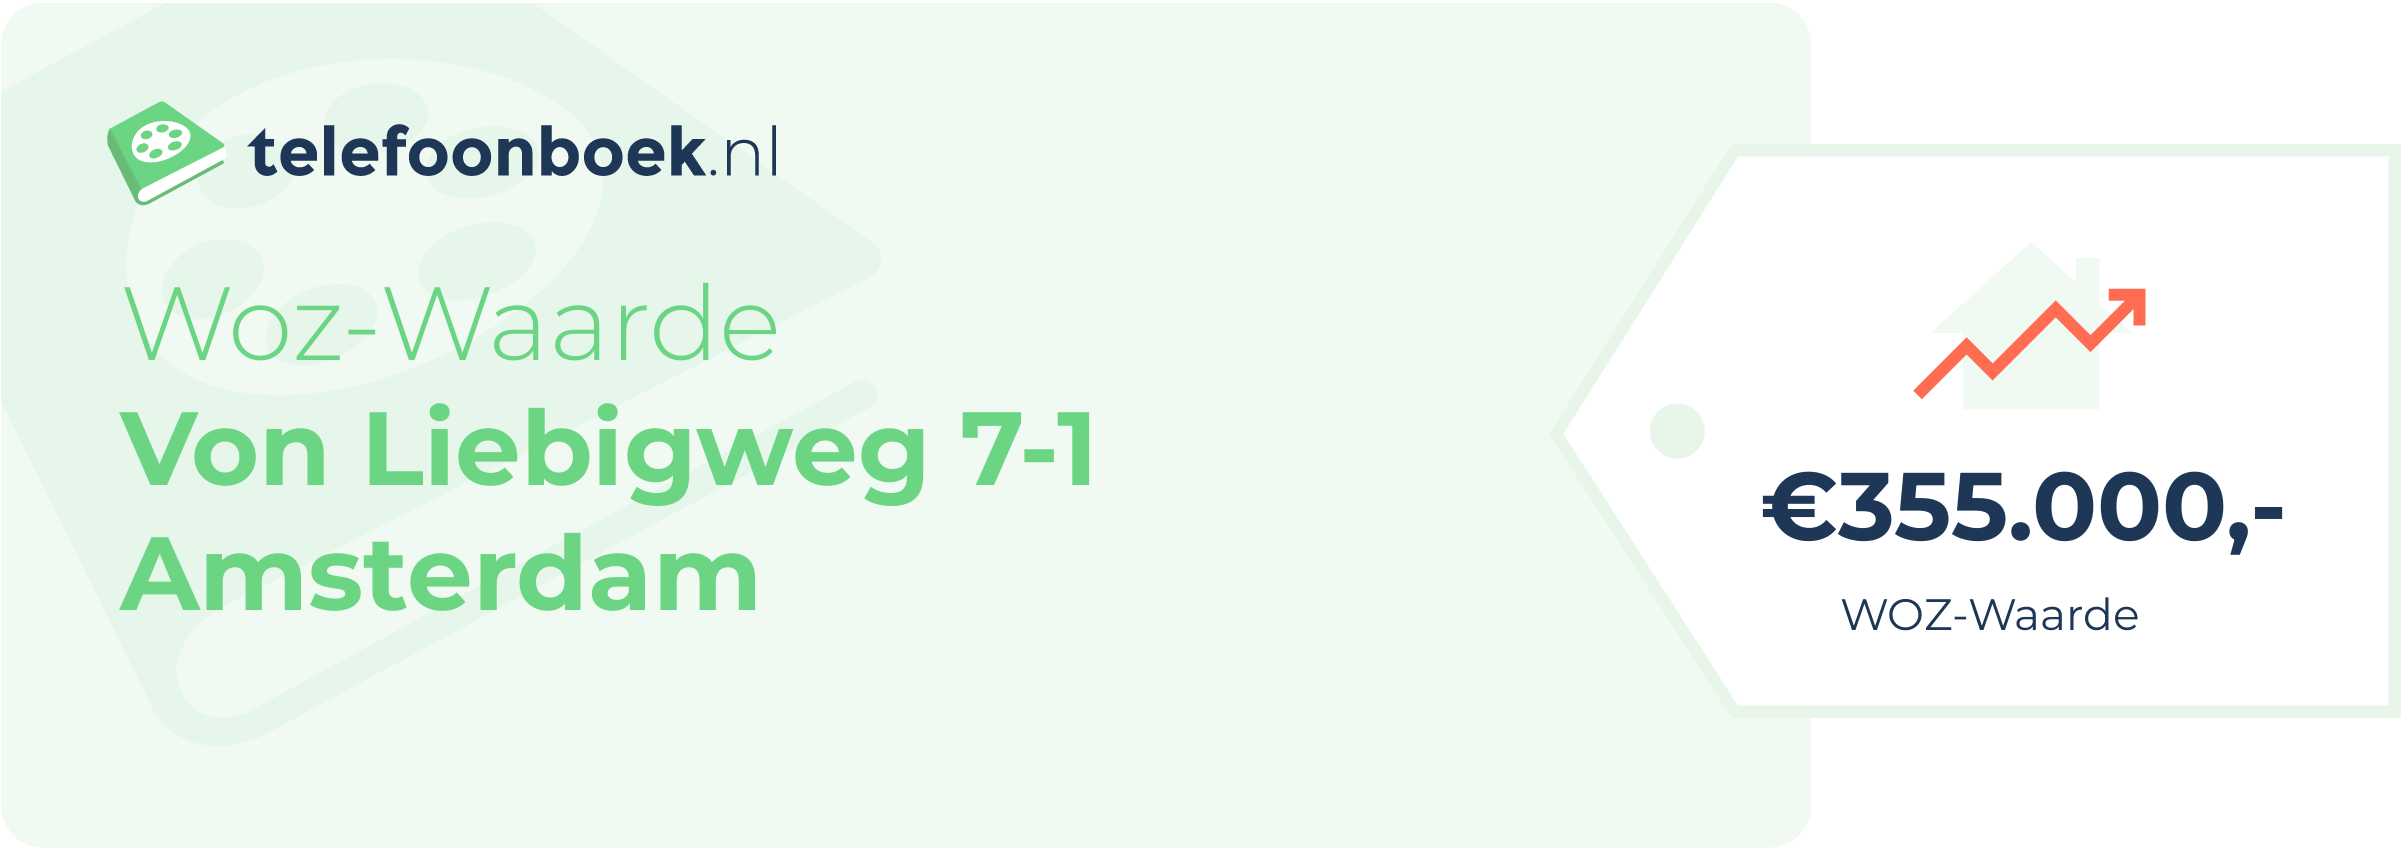 WOZ-waarde Von Liebigweg 7-1 Amsterdam